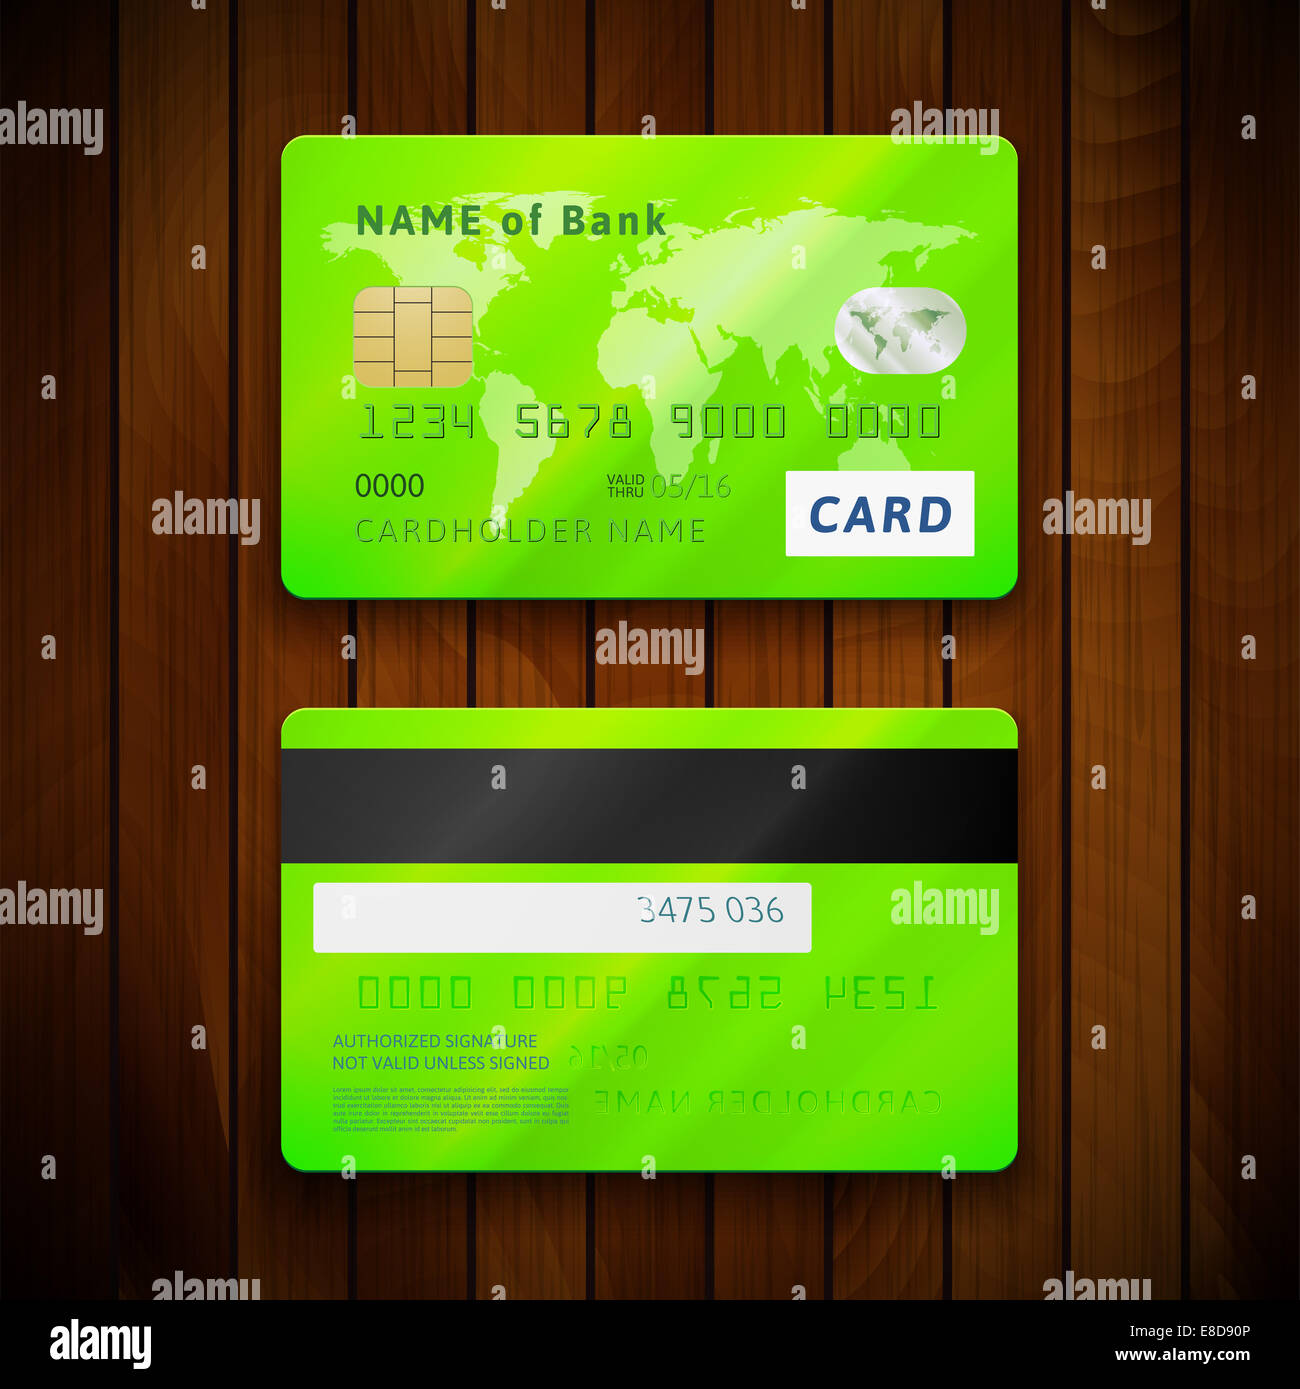 Код карты на которой есть деньги. Банковская карта с двух сторон. Банеовская карат с двух сторон. Банковская карта с 2 сторон. Кредитная карта с двух сторон.